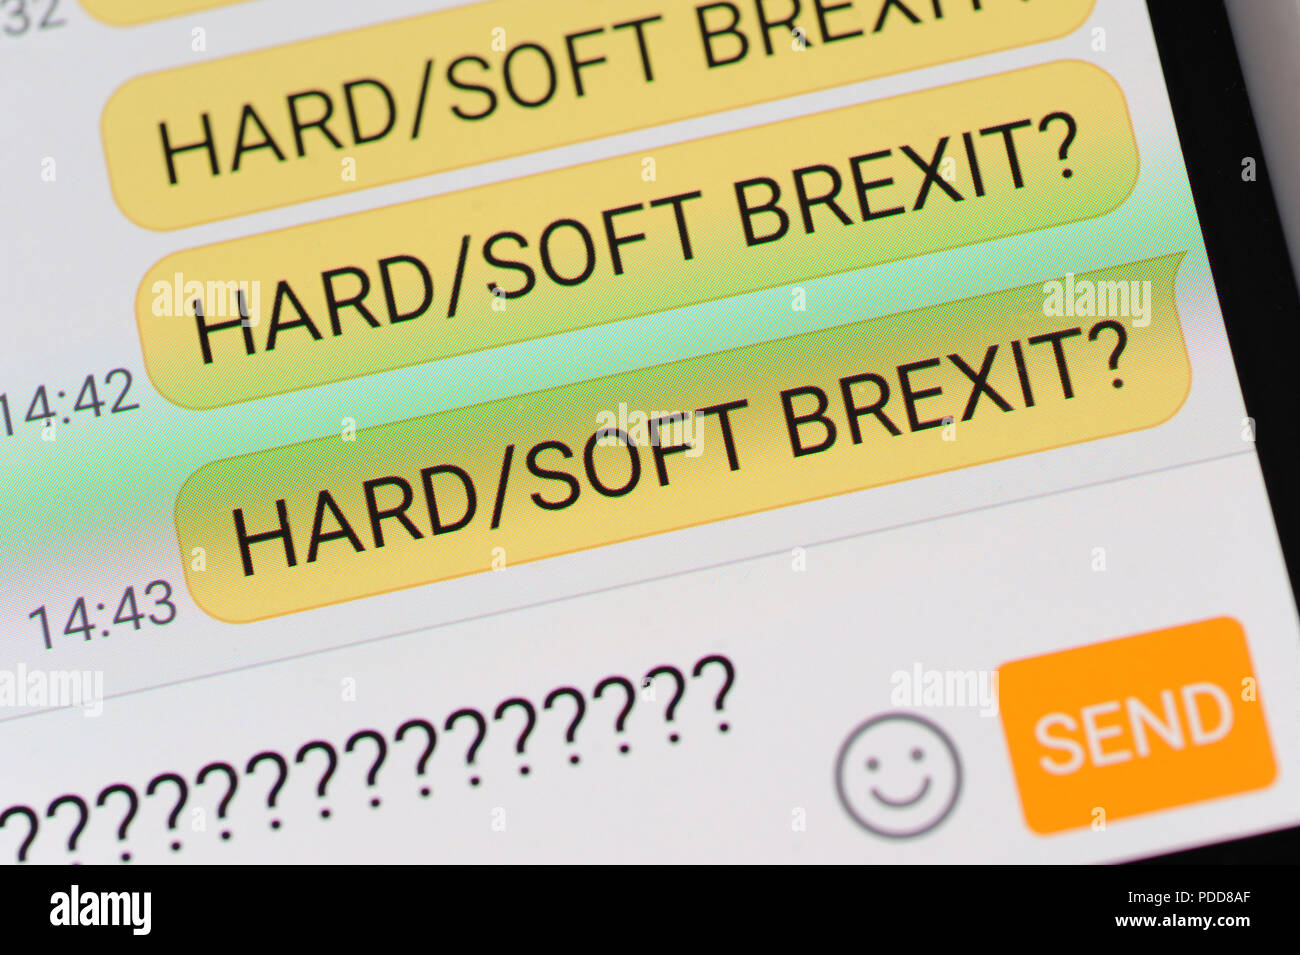 HARD SOFT BREXIT messaggio di testo sullo smartphone BREXIT nuovamente affrontare il commercio economia UK NESSUN ACCORDO NEGOZIATO Foto Stock